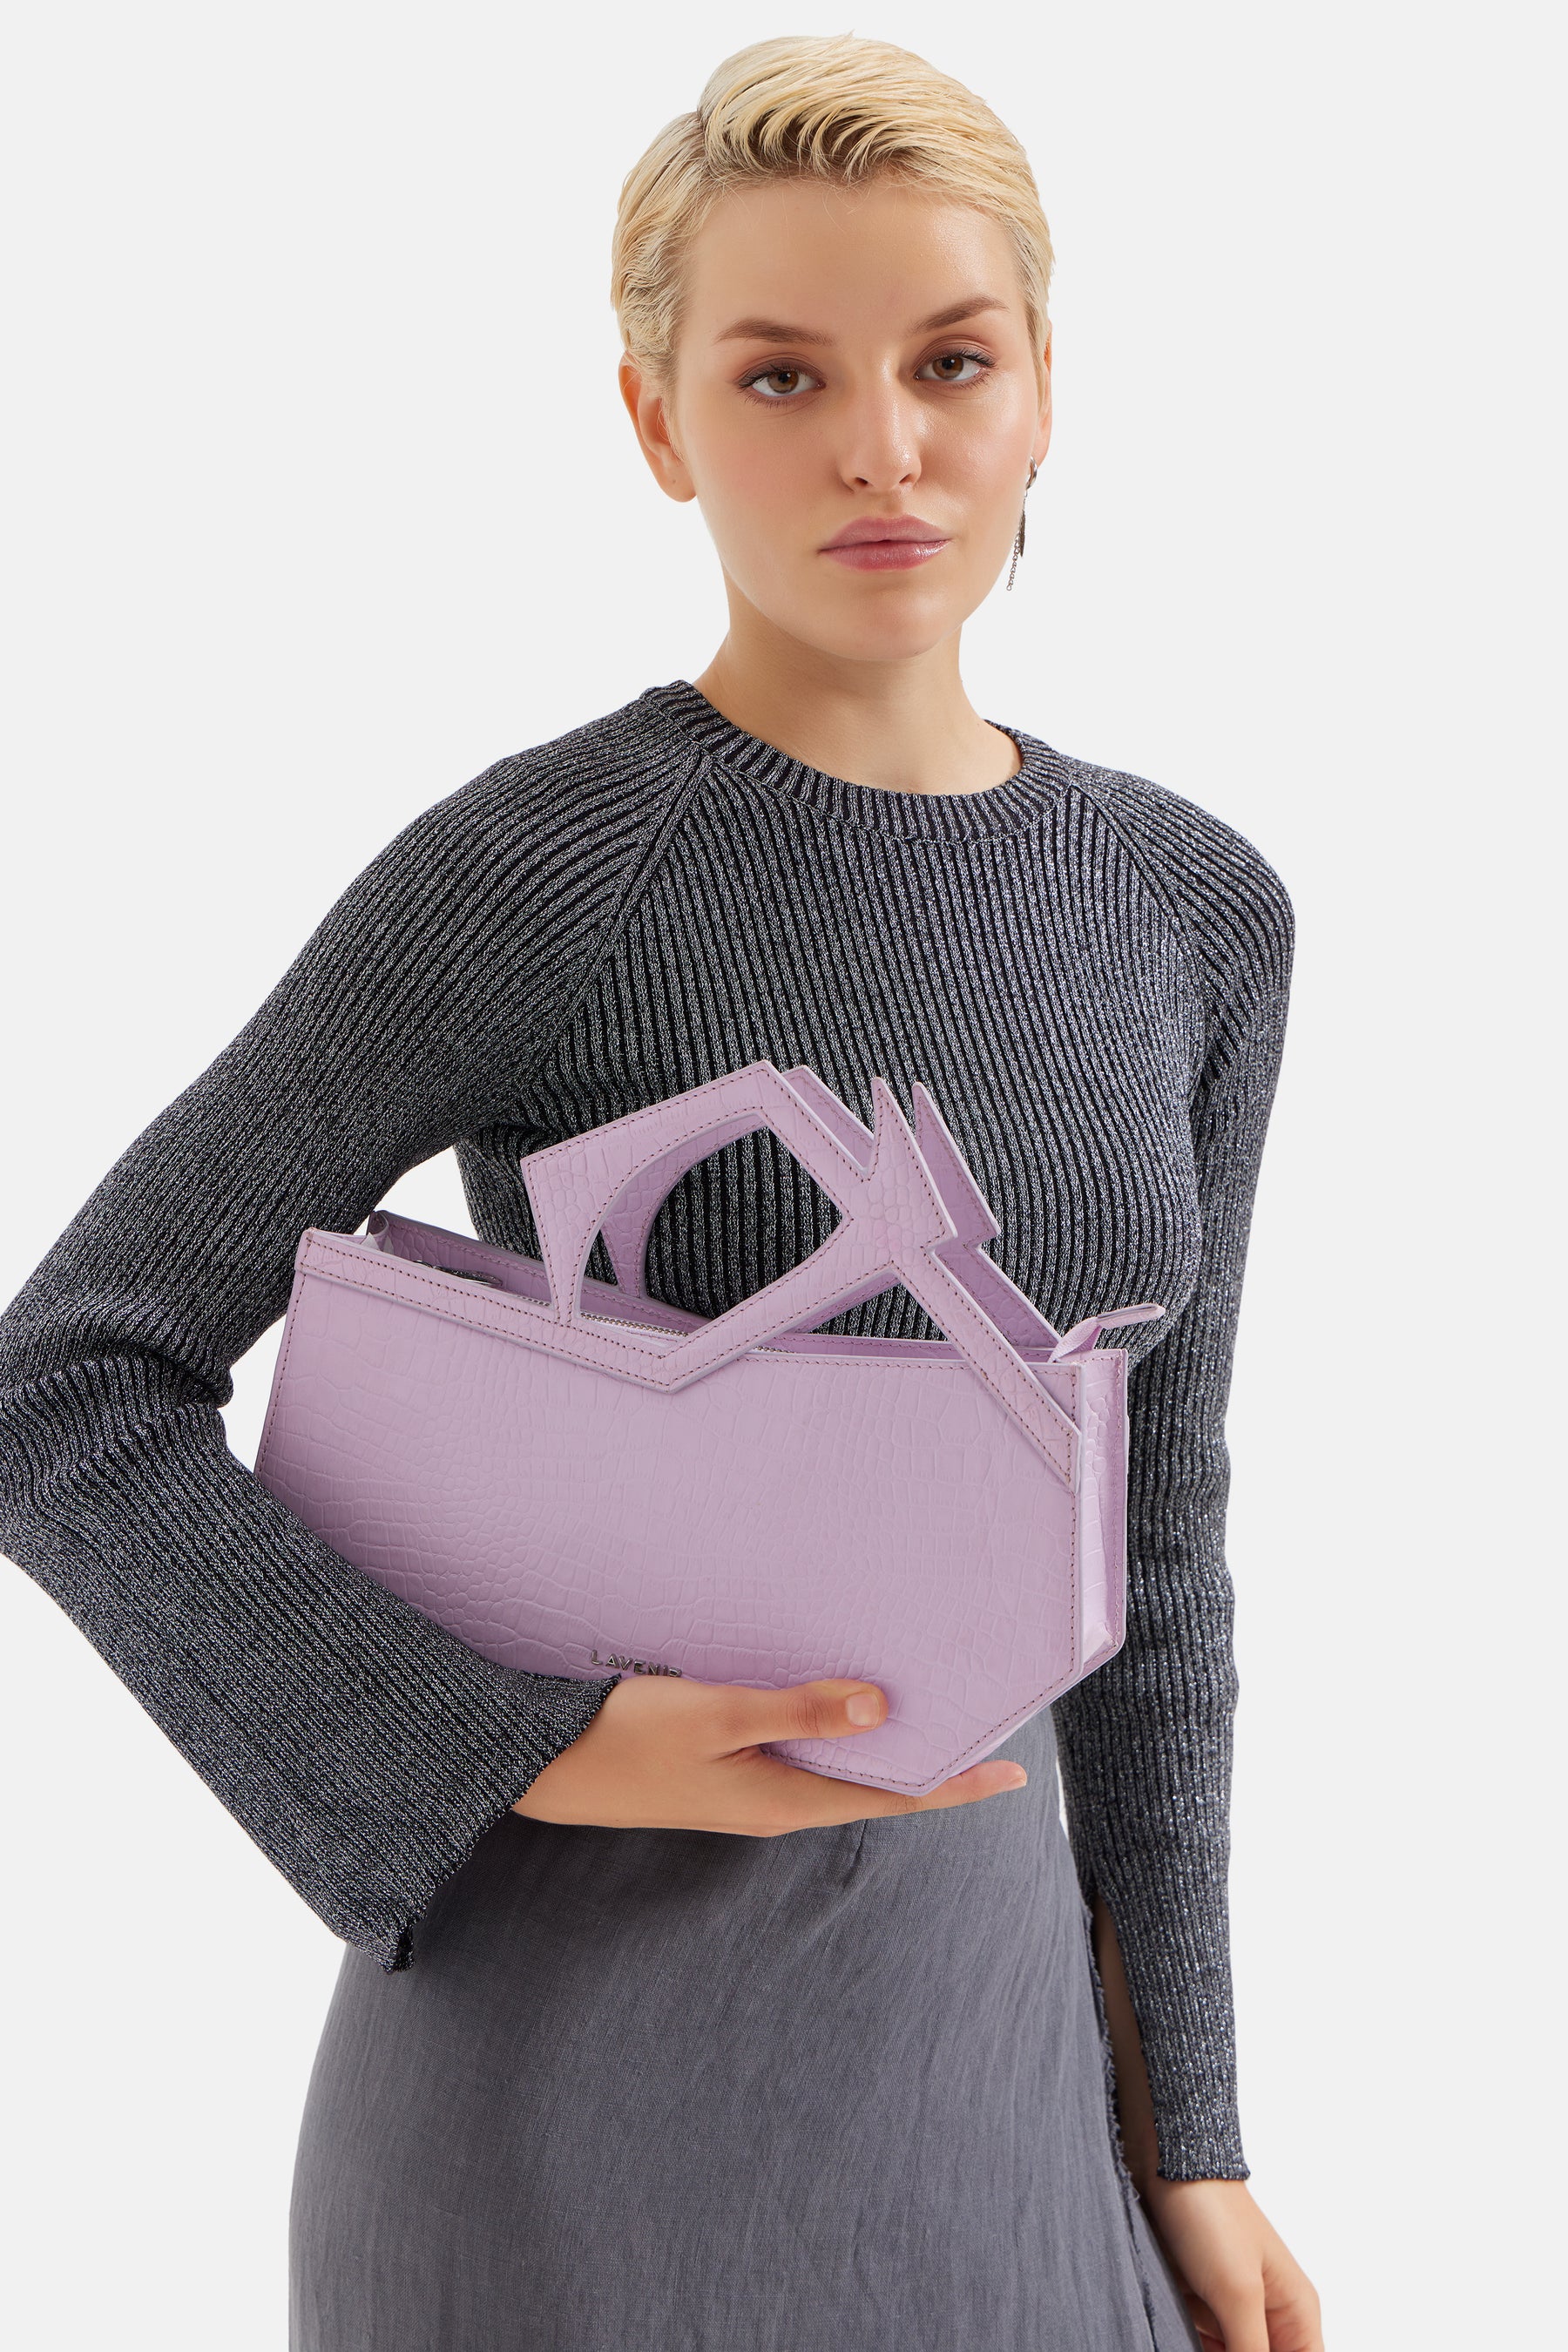 Abigail - Asymmetric Hand Bag - Lilac Croco